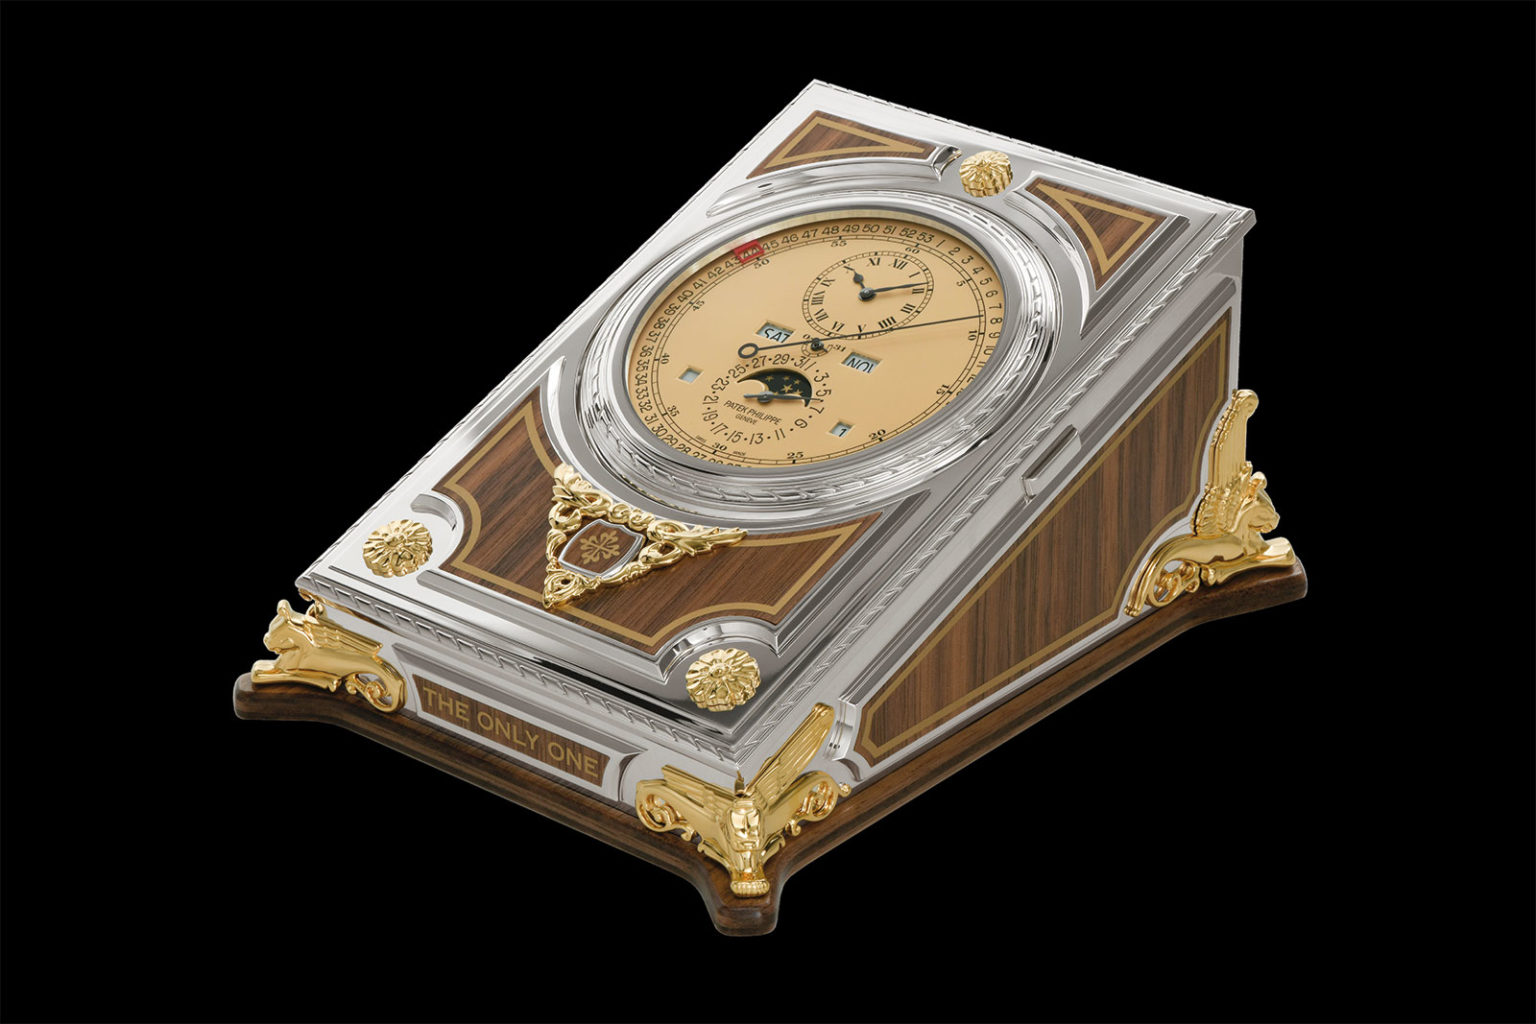 Chiêm ngưỡng mẫu đồng hồ để bàn phức tạp của Patek Philippe được bán với giá 9.5 triệu CHF tại Only Watch 2021